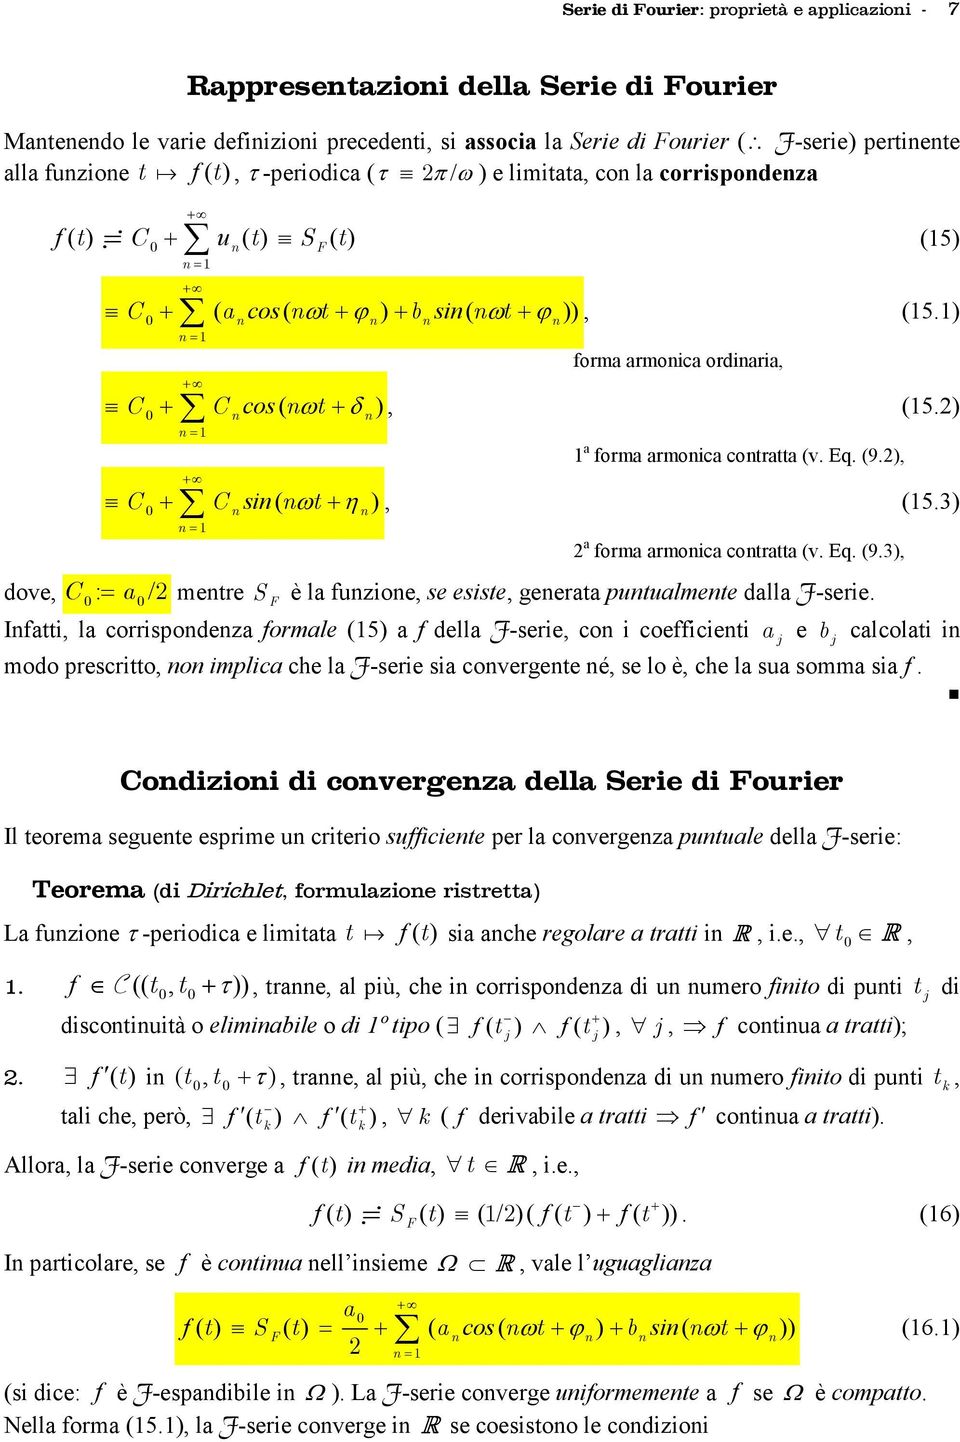 armoica cotratta (v Eq (93, dove, C : = a / metre S F è la fuzioe, se esiste, geerata utualmete dalla F-serie Ifatti, la corrisodeza formale (5 a f della F-serie, co i coefficieti a j e b j calcolati